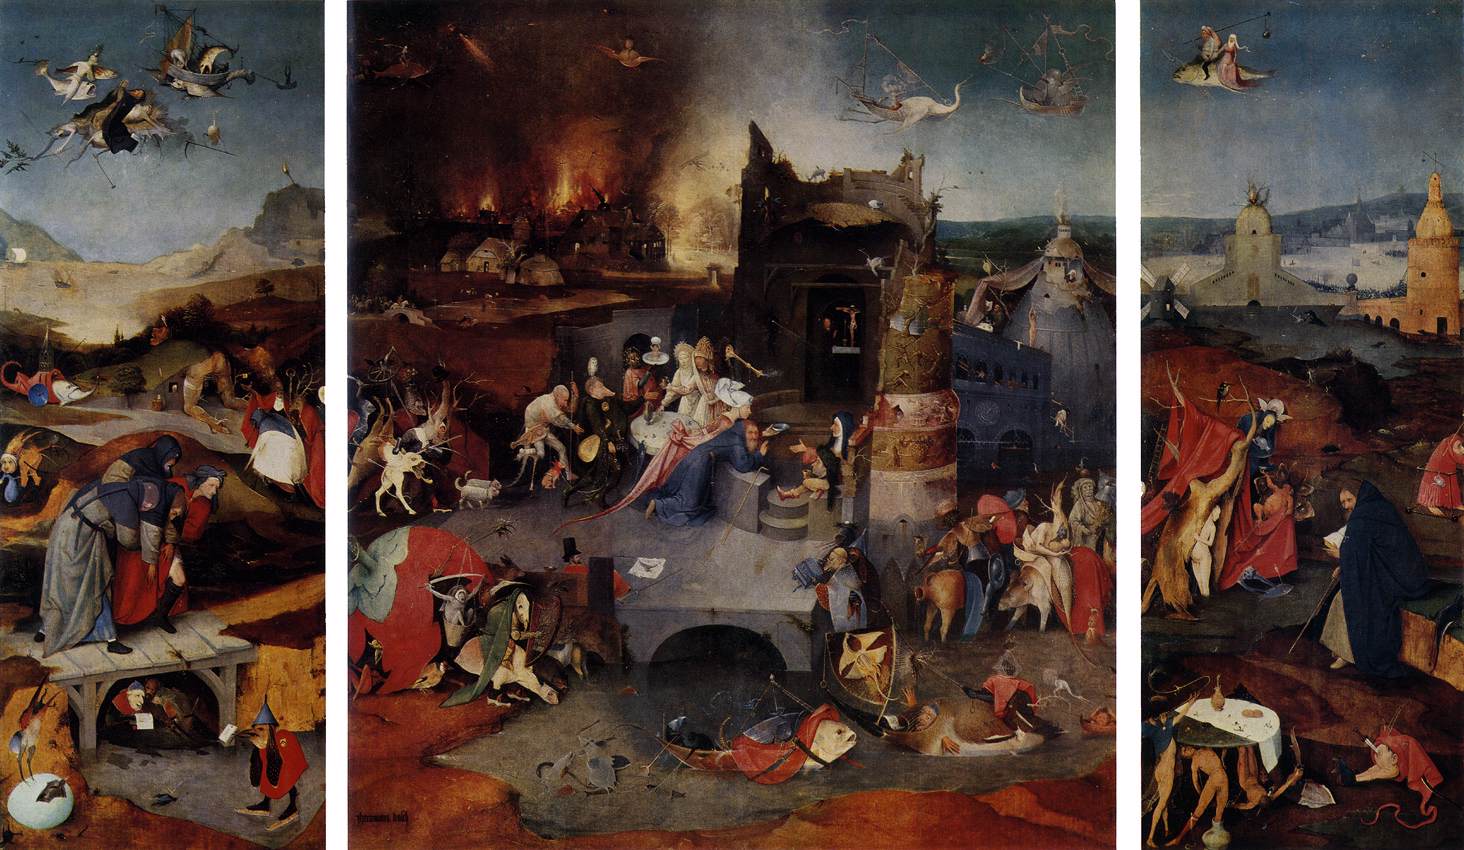 Trittico delle tentazioni di Sant’Antonio by Hieronymus Bosch - 1501 - 131 cm × 228 cm 